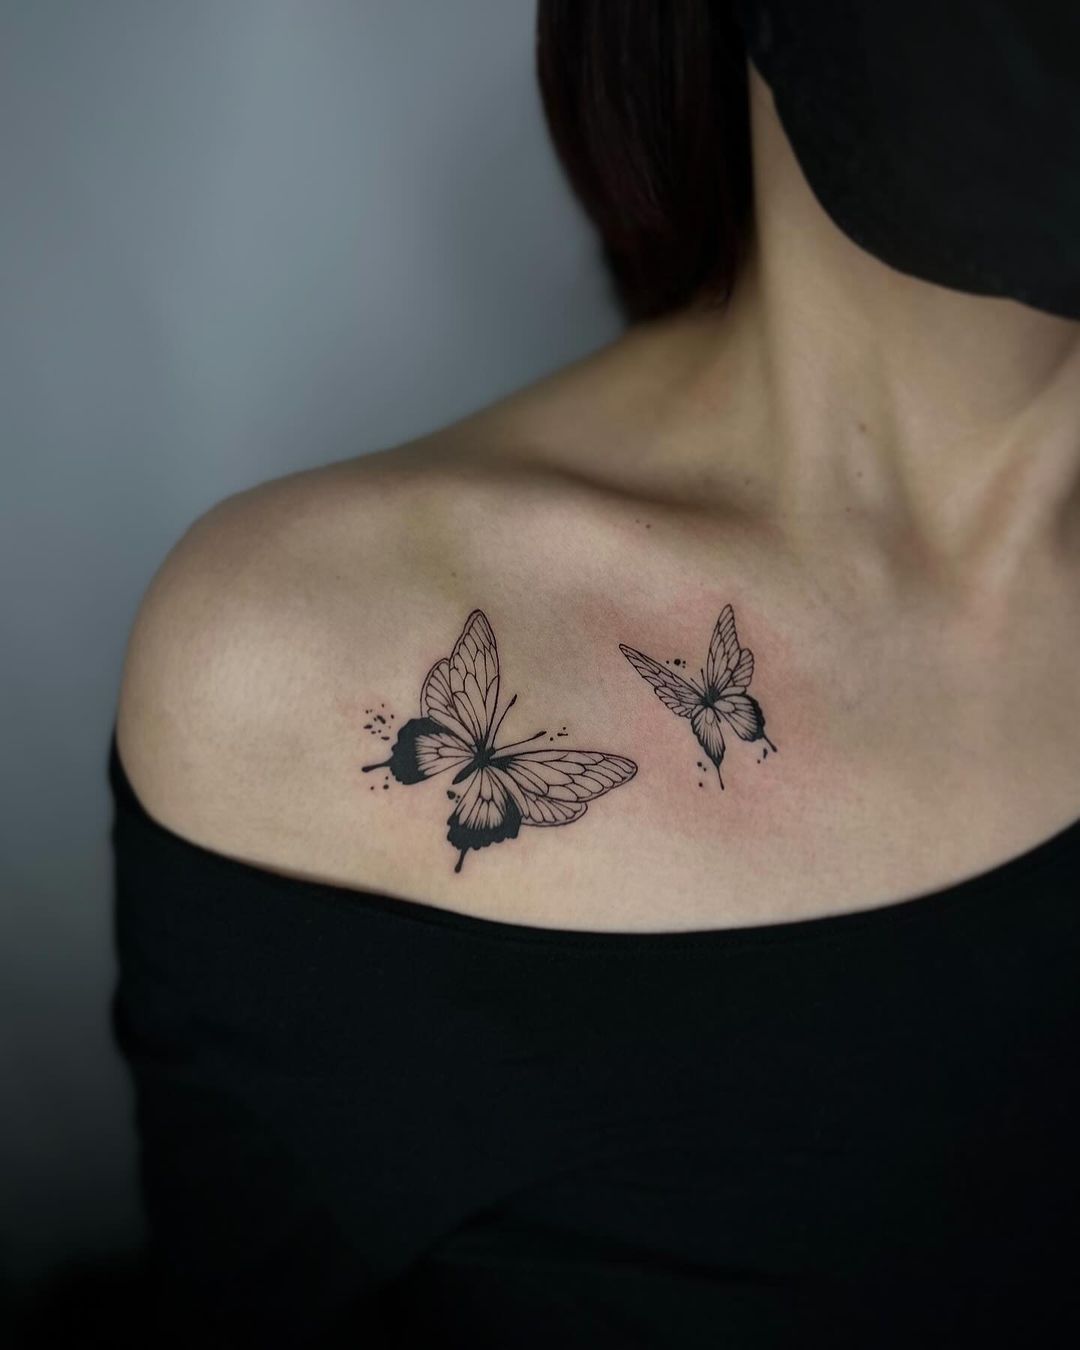 Butterfly tattoo ideas by cyma tattooer